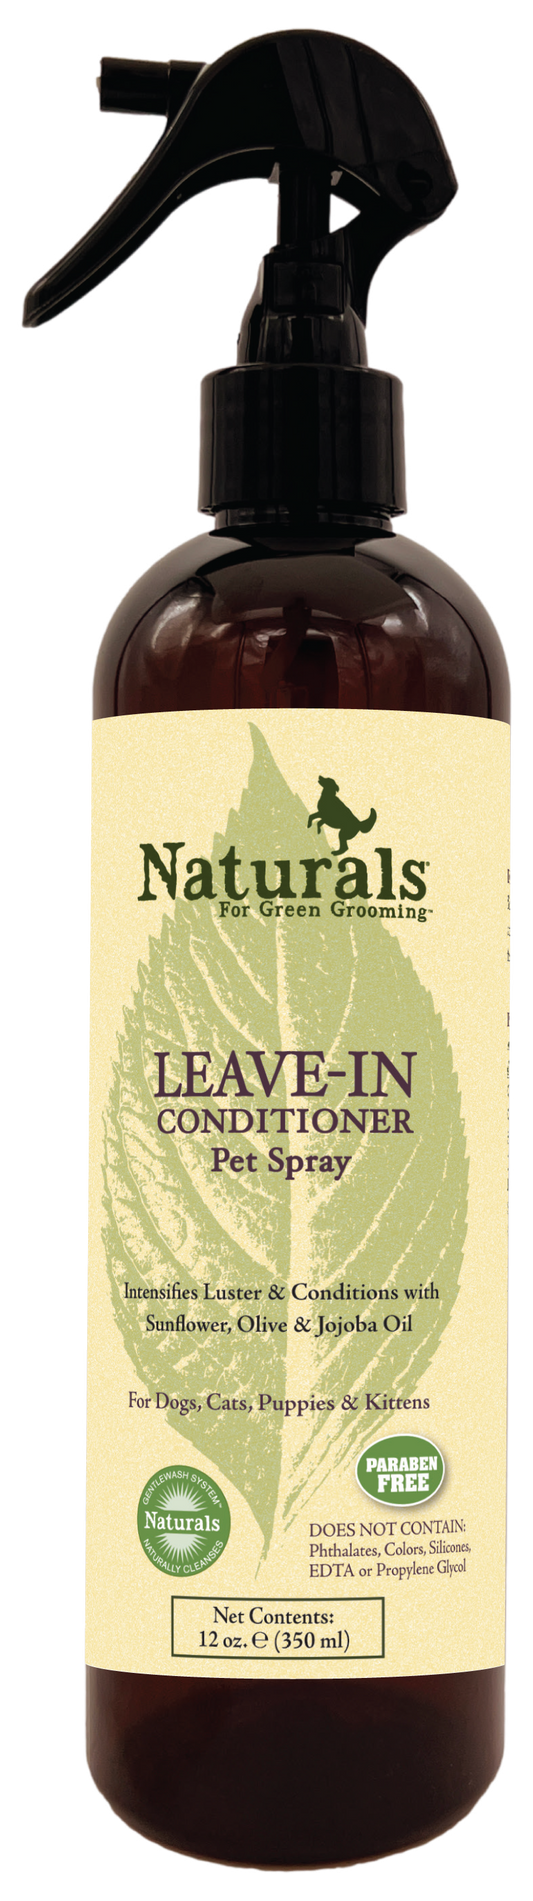 Leave-In Pet Conditioner | Naturals™